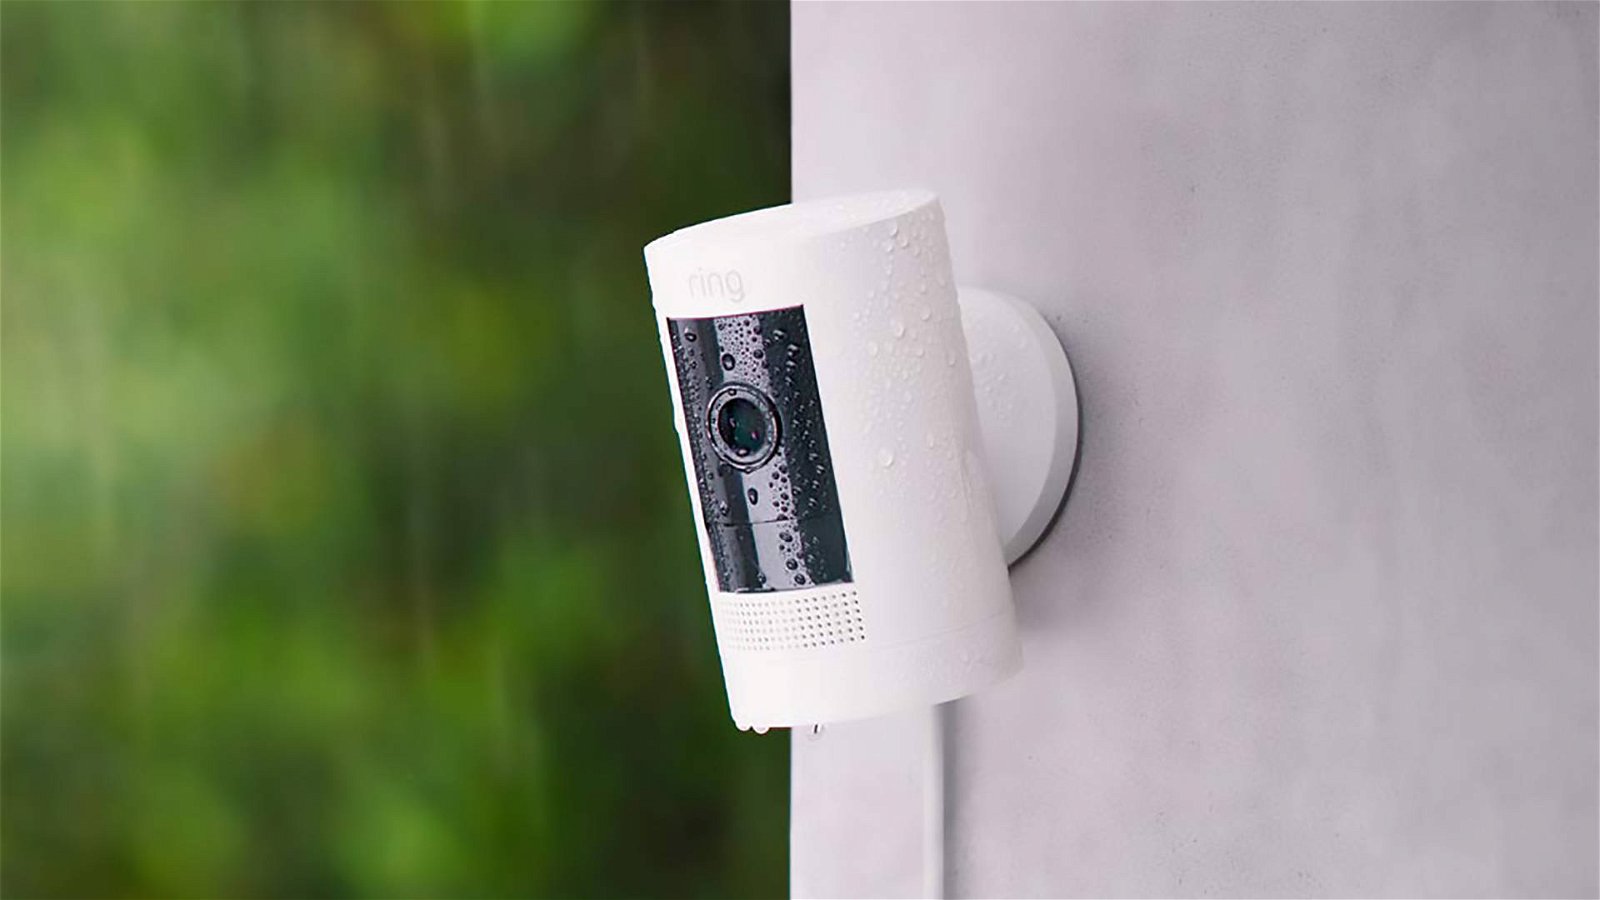 Immagine di Amazon Ring Stick Up Cam, la videocamera smart per esterni arriva in Italia